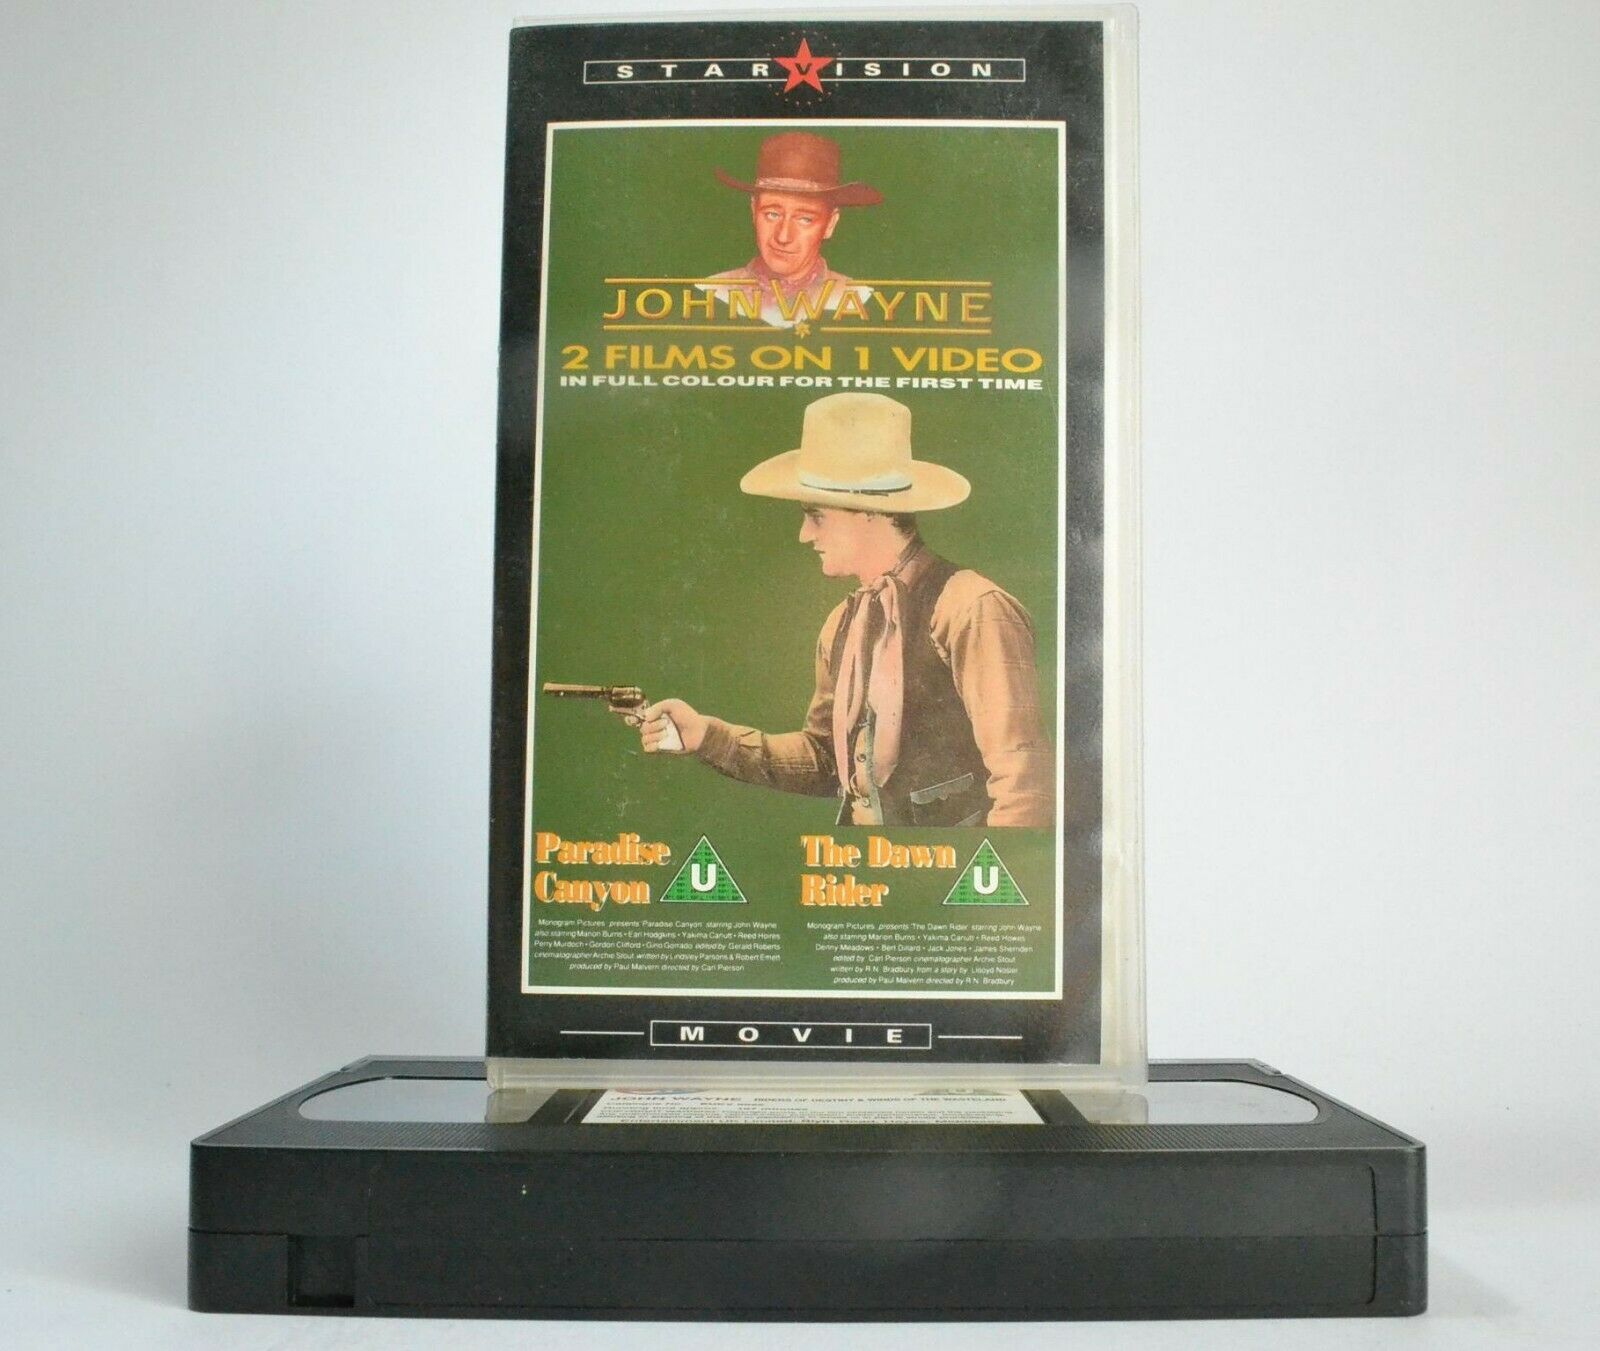 Paradise Canyon / The Dawn Rider: Westerns [Full Colour] - John Wayne - Pal VHS-